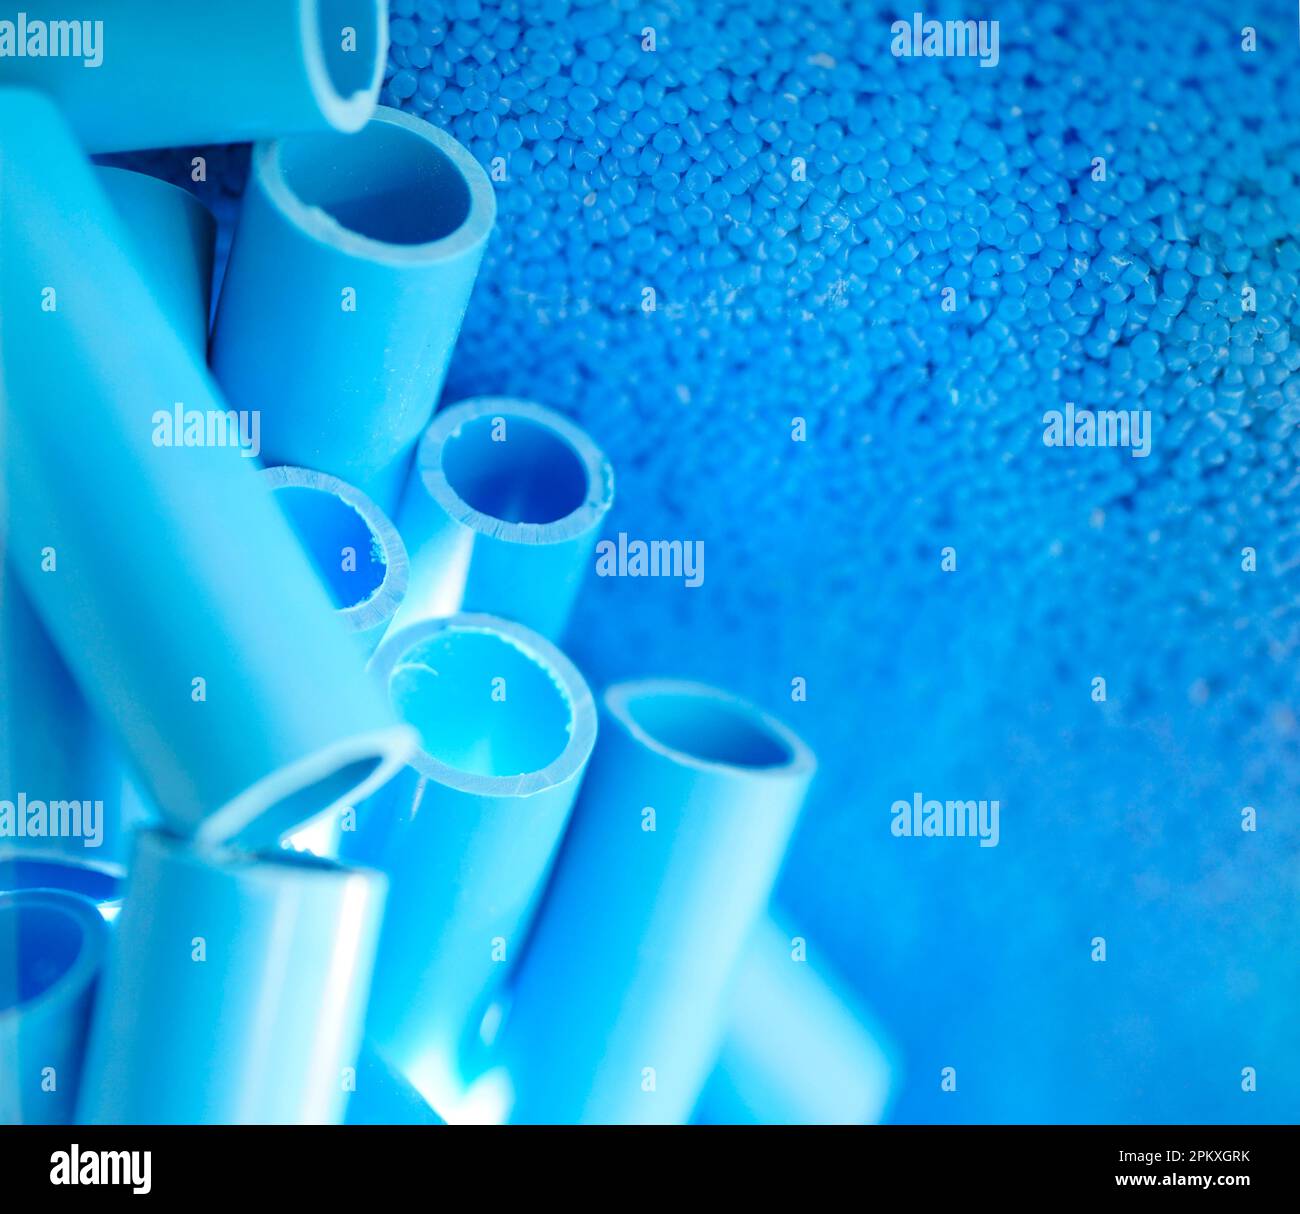 Blaue Rohre und Kunststoff-Polymer-Pellets als Rohmaterial für die Produktion von blauen pvc-Rohren. Industrielles Kunststoffharz. Chemisches Polymergranulat. Thermoplast. Stockfoto